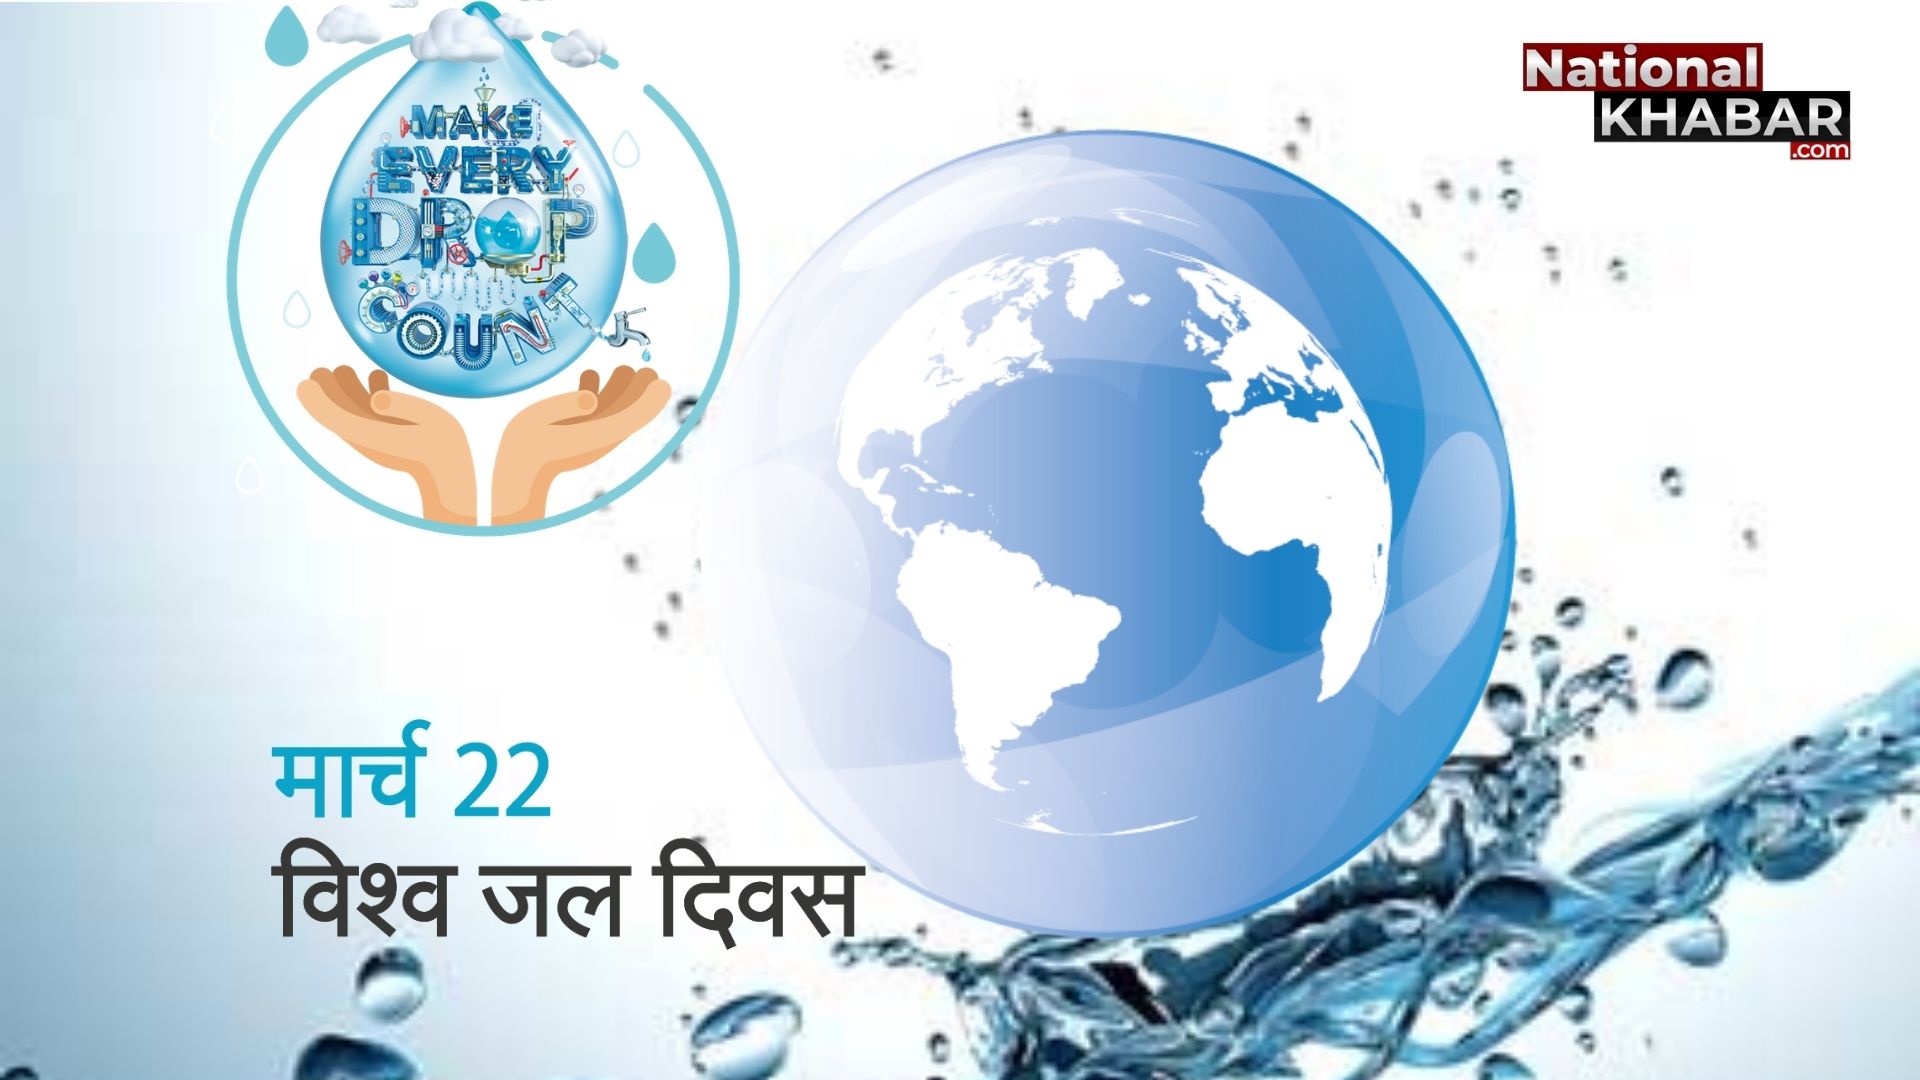 जल के संरक्षण को समर्पित साल की एक तारीख, 22 मार्च को क्यों मनाते हैं विश्व जल दिवस, समझें इस दिन का महत्व और निभाएं अपनी जिम्मेदारी